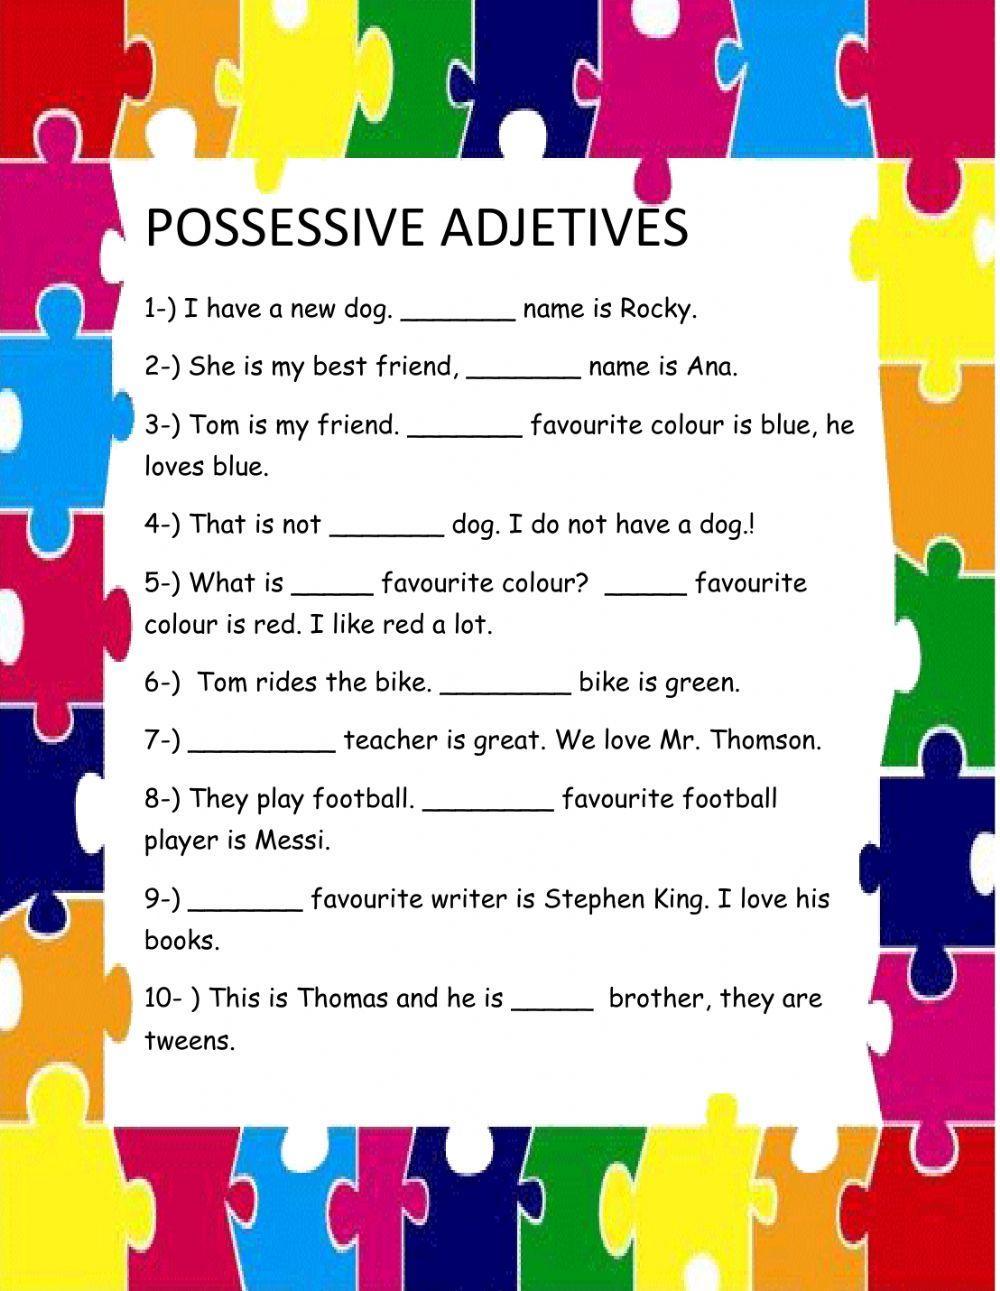 Possessive adjetive